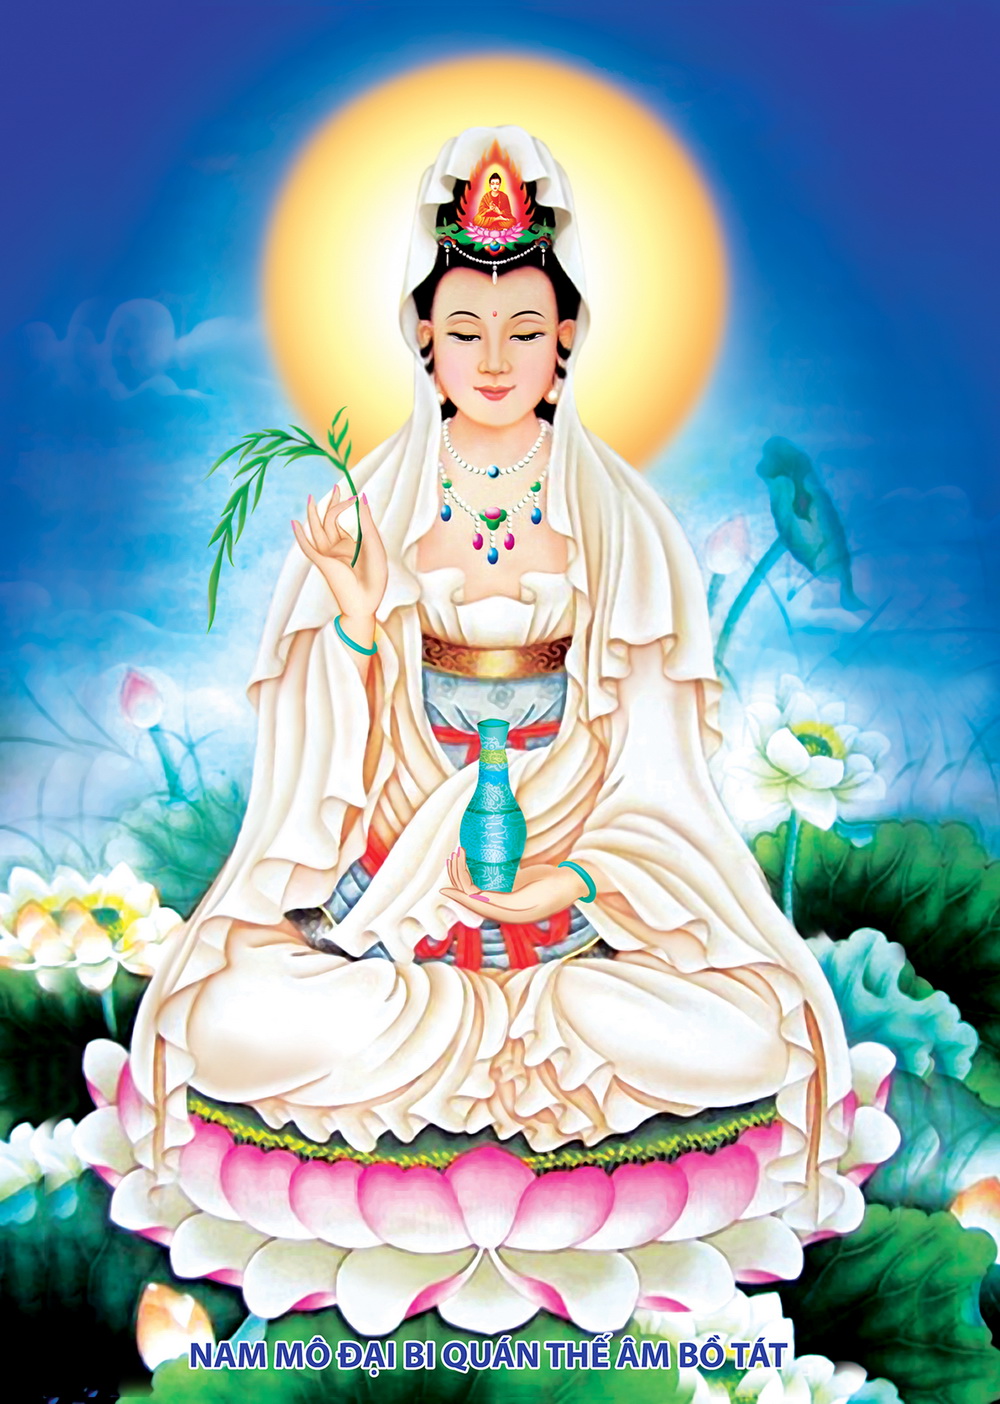 Bộ hình họa Phật Quán Thế Âm Bồ Tát - Hình hình họa Phật rất đẹp nhất